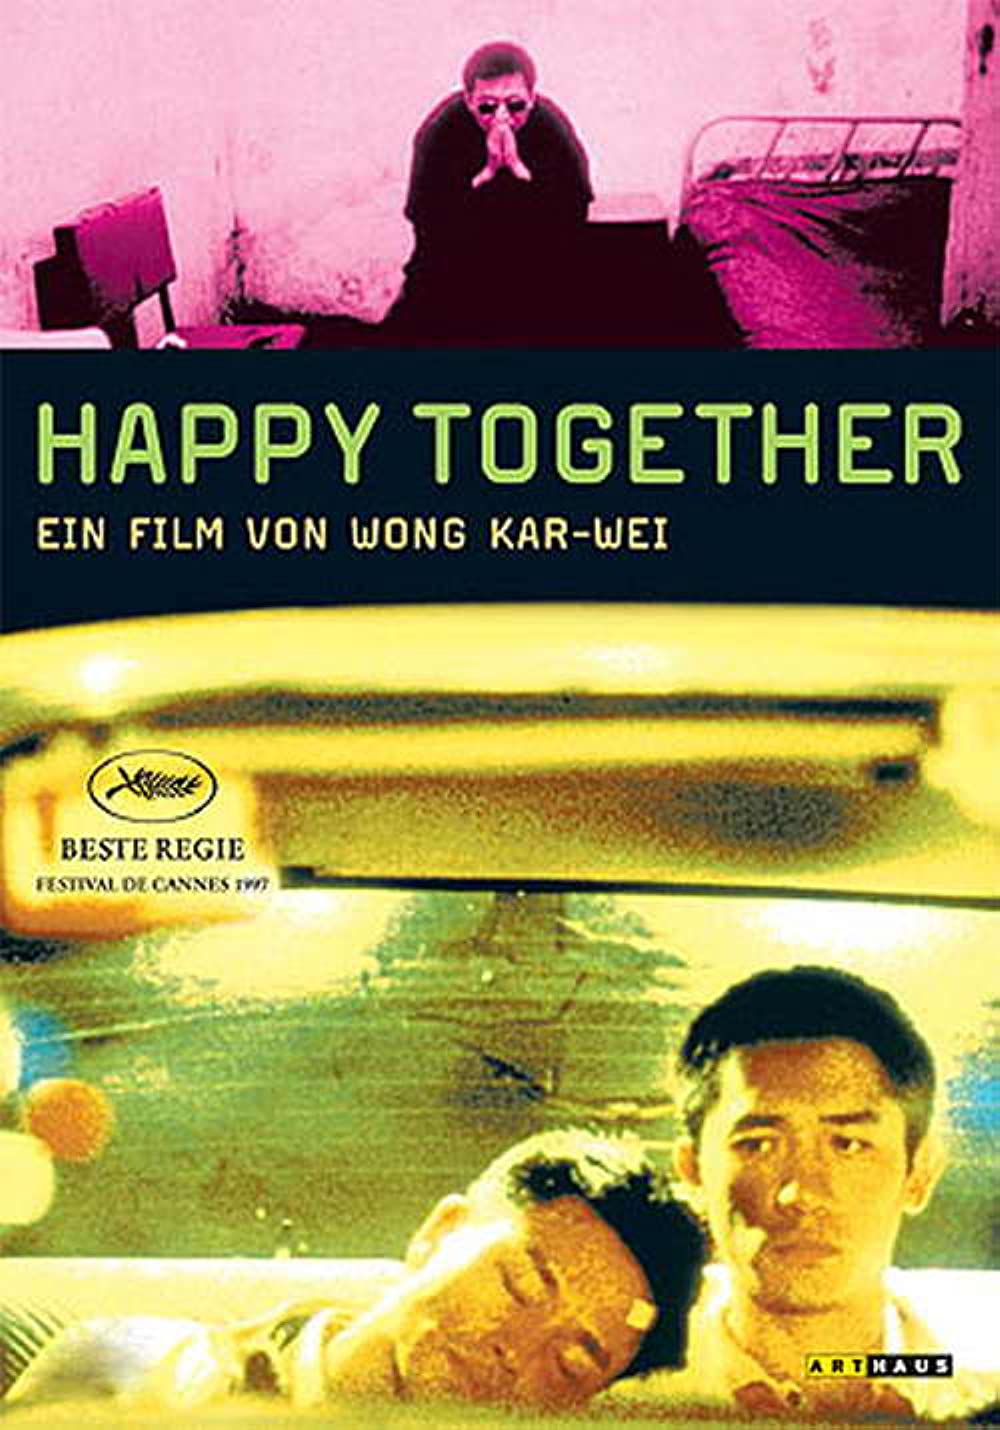 Filmbeschreibung zu Happy Together (1997)